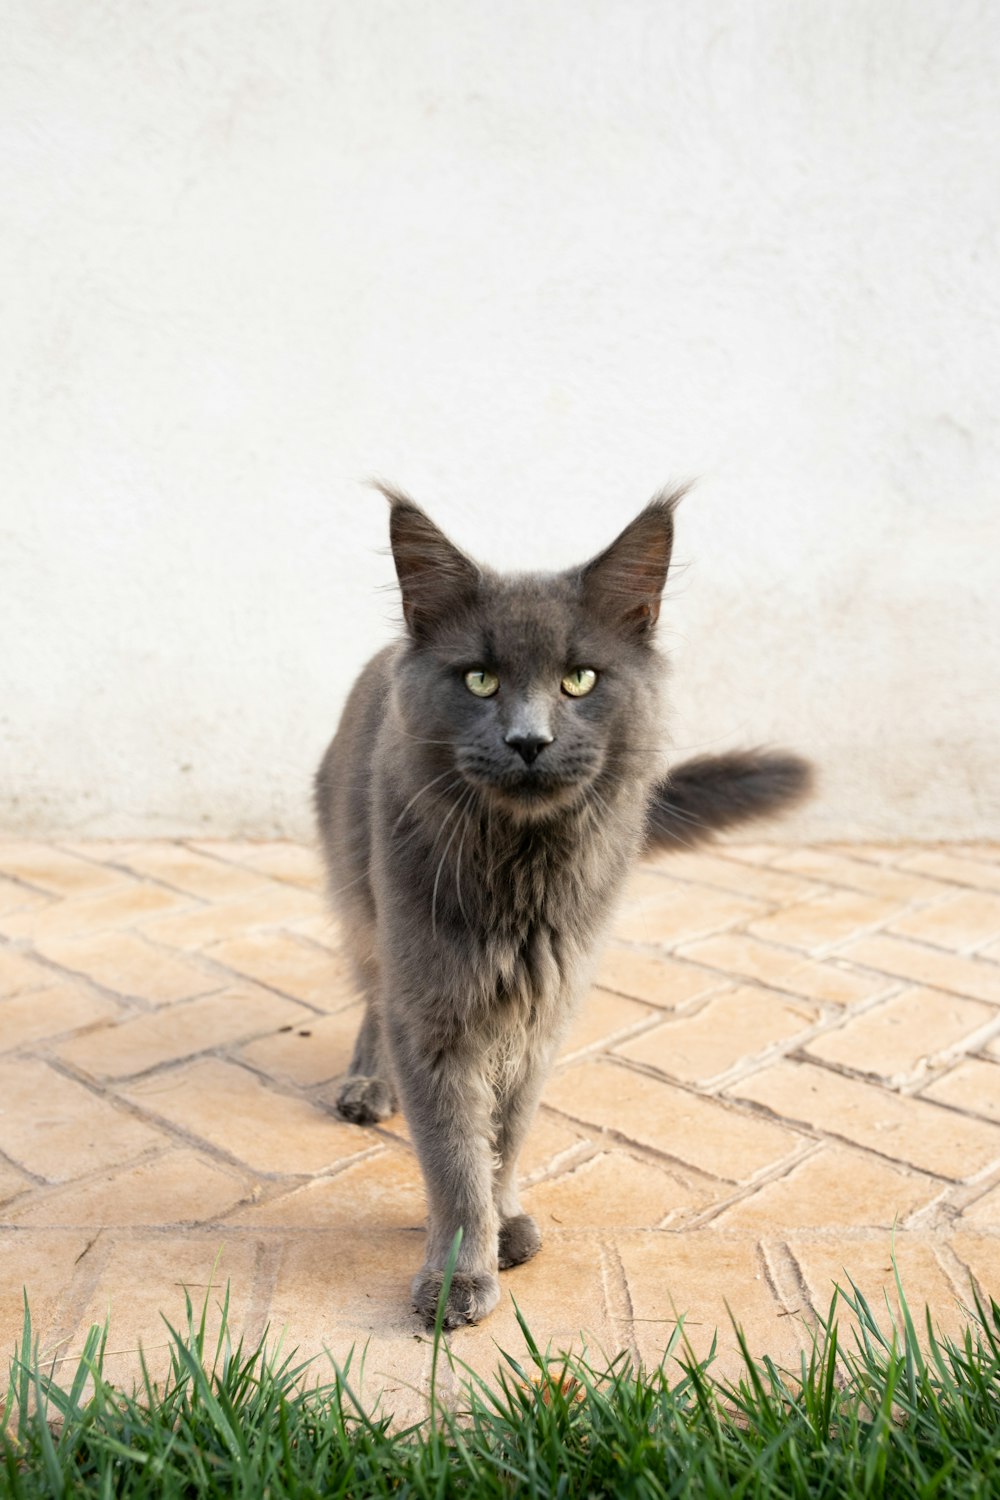 a gray cat walking across a brick walkway